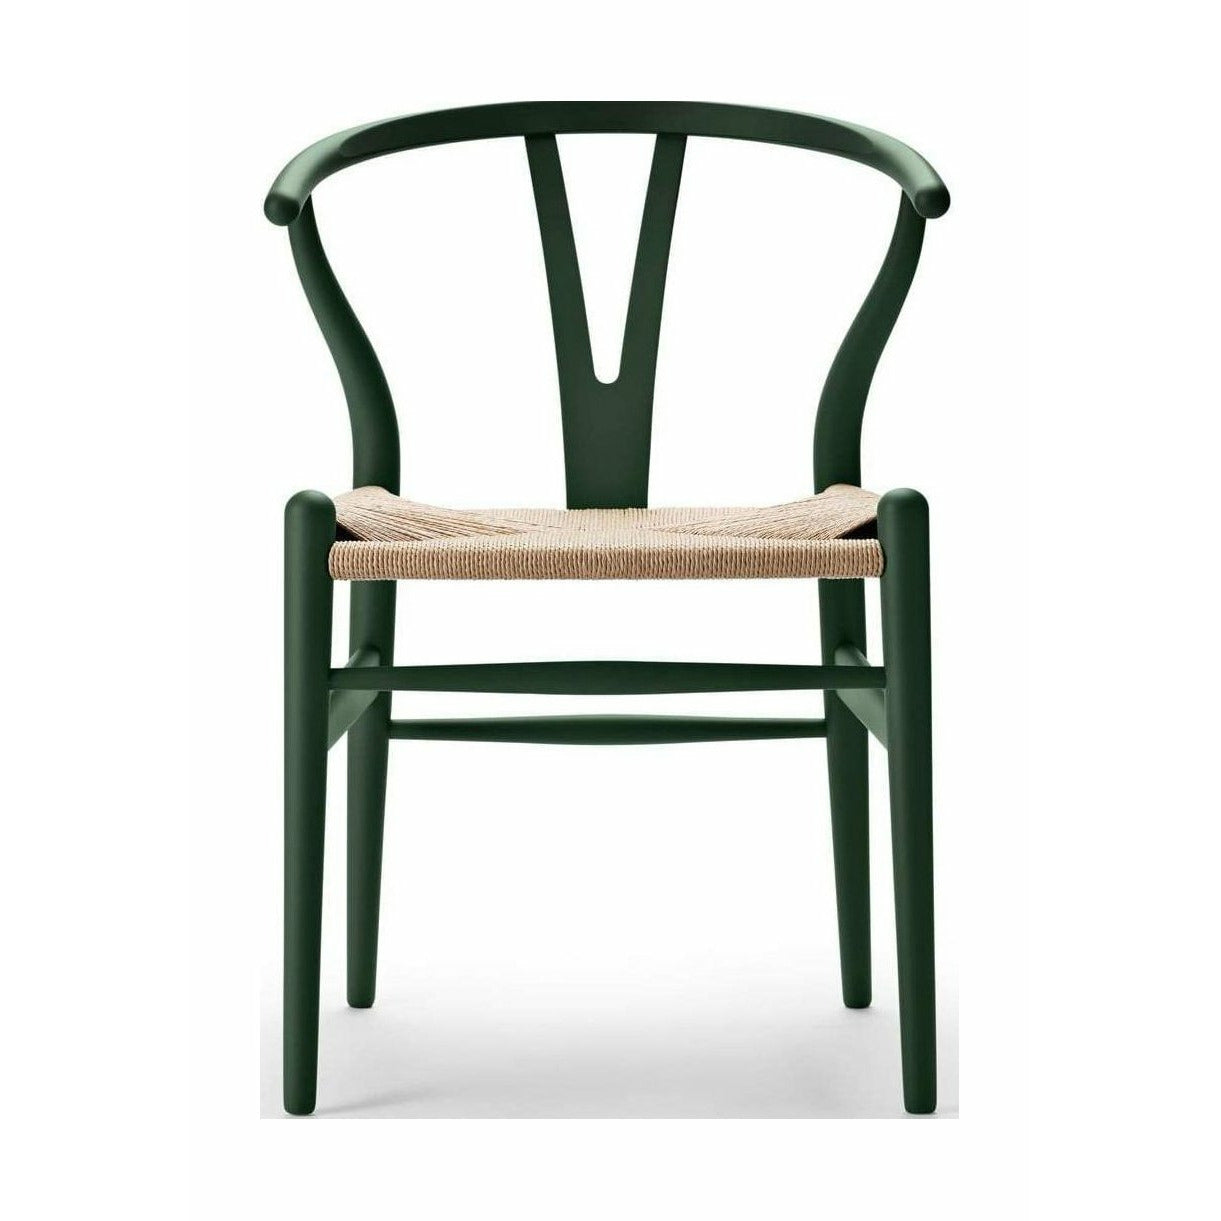 Carl Hansen CH24 Wishbone krzesło specjalne, edycja specjalna Beech, Soft Green